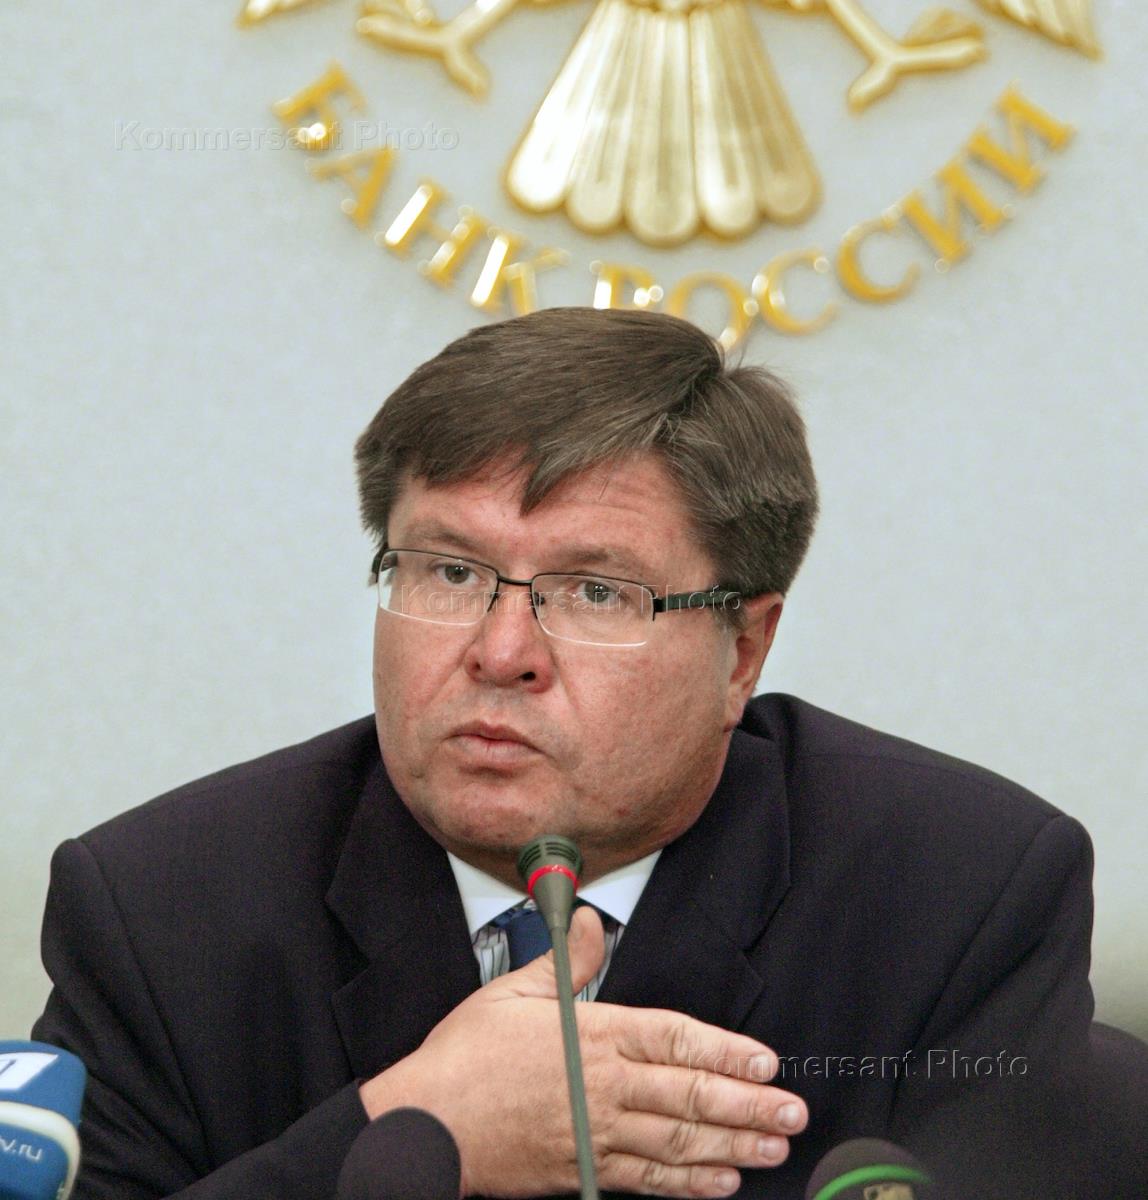 южное федеральное управление банка россии фотографии руководителей